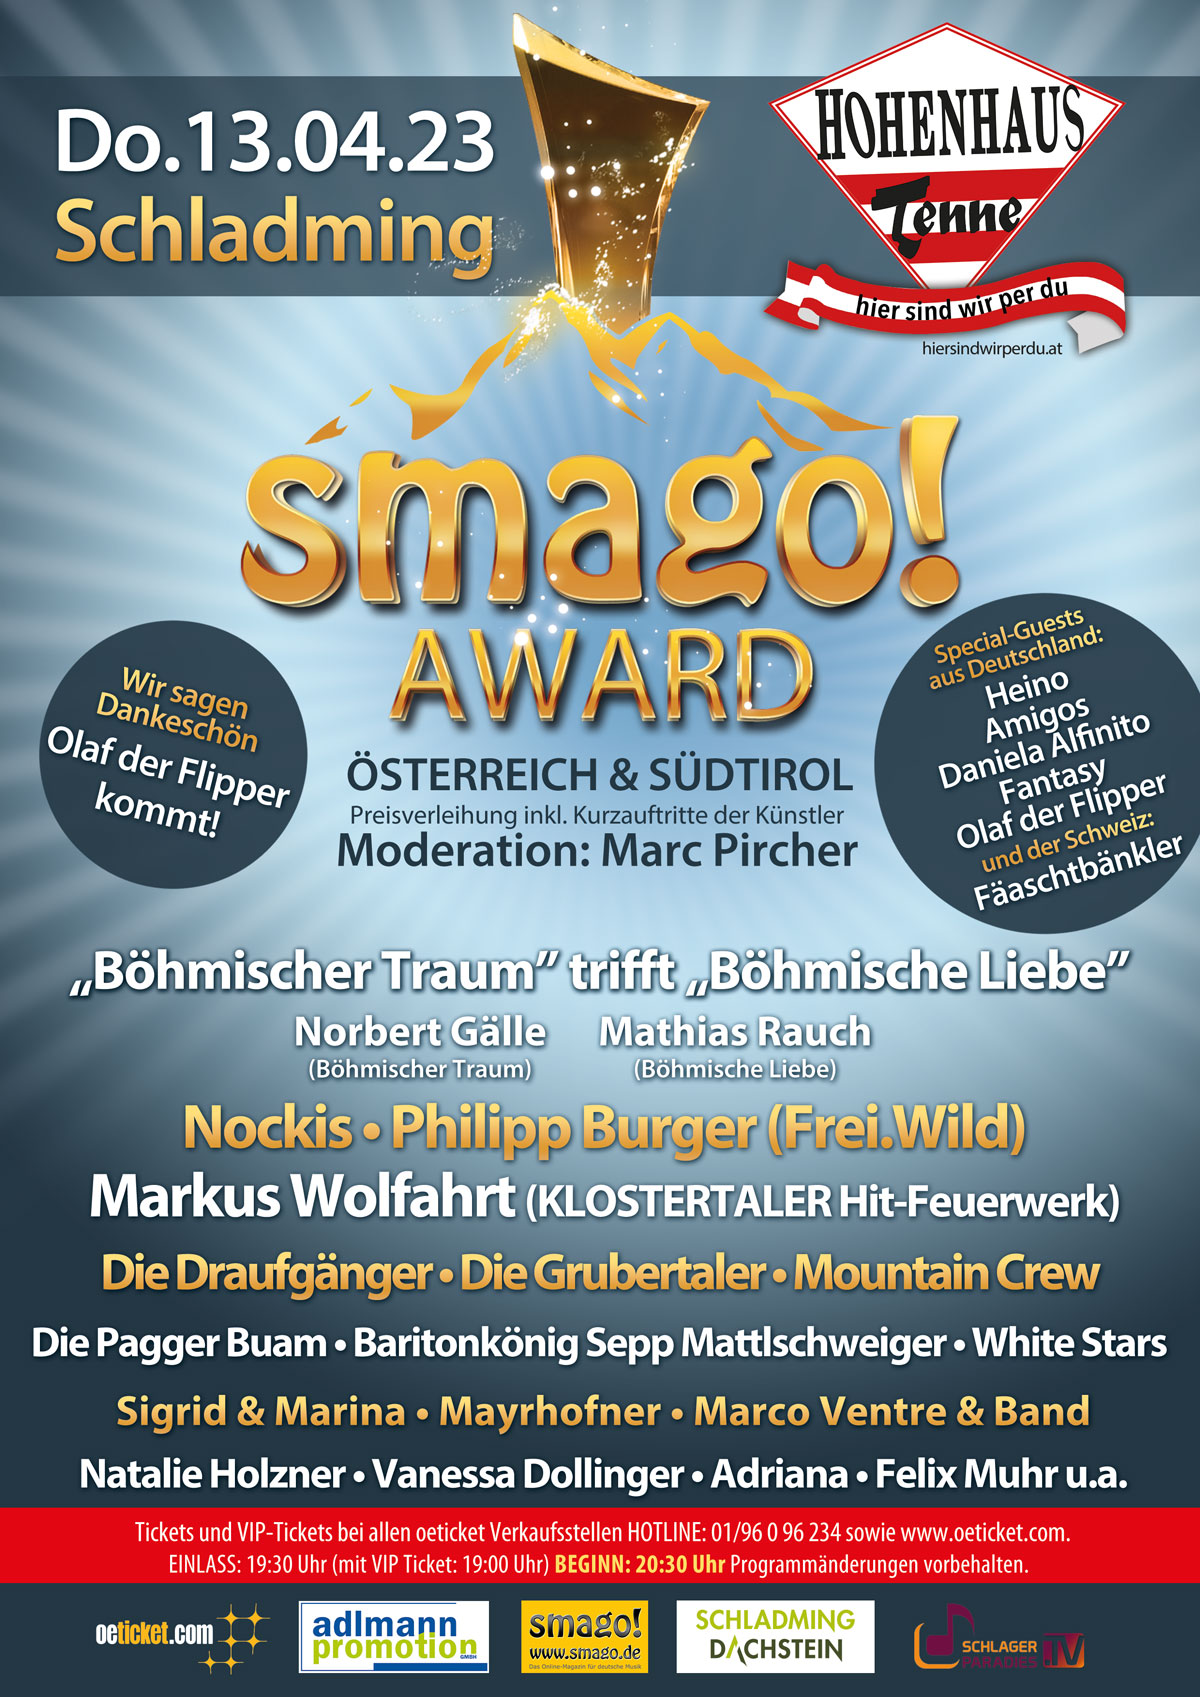 smago! Award Österreich & Südtirol 3.0 (Event) *** Am 13.04.2023 in der Hohenhaus Tenne in Schladming